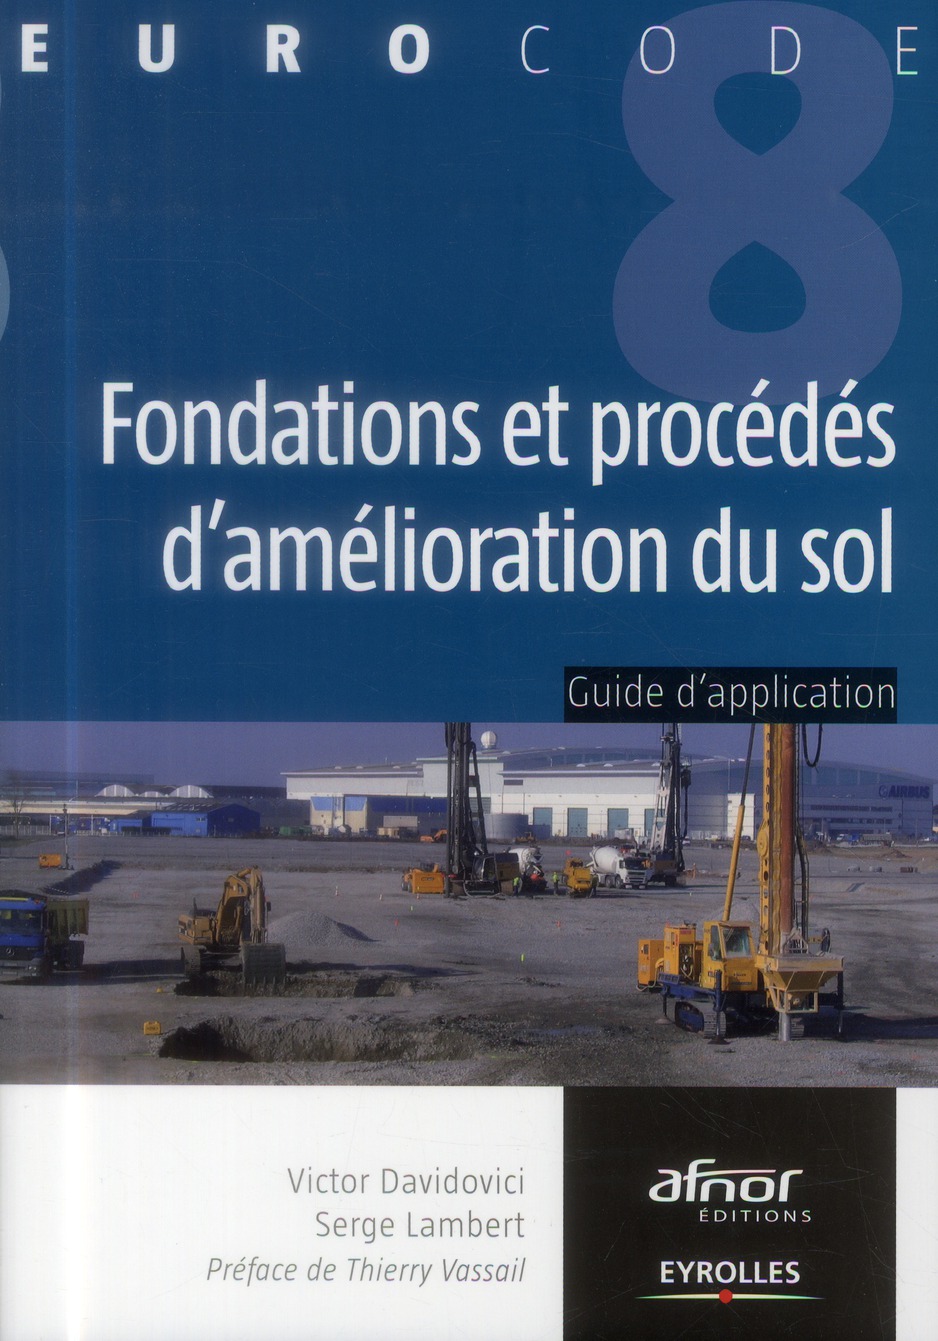 FONDATIONS ET PROCEDES D'AMELIORATION DU SOL - GUIDE D'APPLICATION DE L'EUROCODE 8 (PARASISMIQUE).